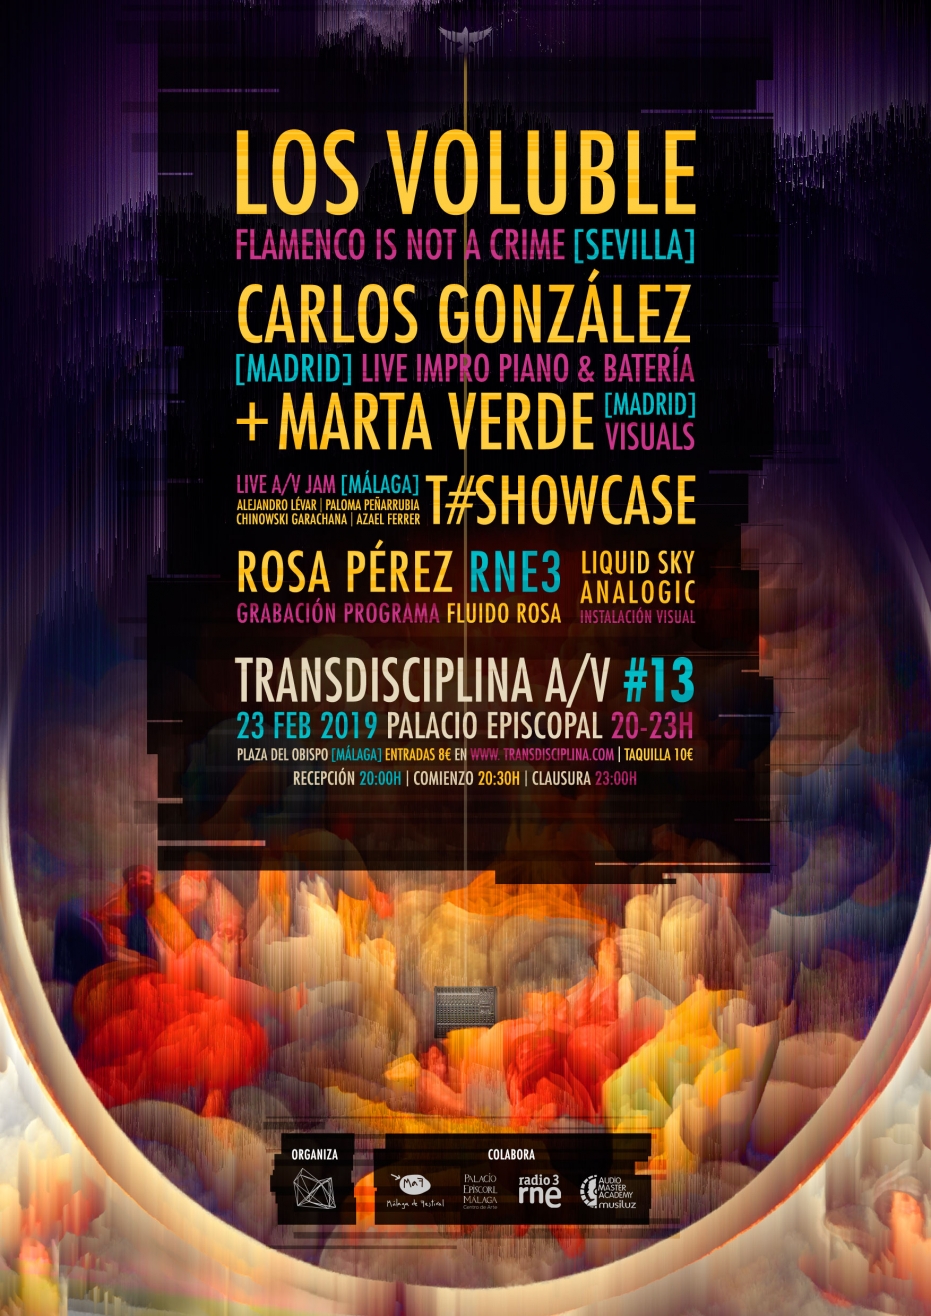 Transdisciplina Especial MaF 2019: Los Voluble, Carlos González y Marta Verde y T#Showcase live A/V Jam. Grabación del programa Fluido Rosa, de Radio3